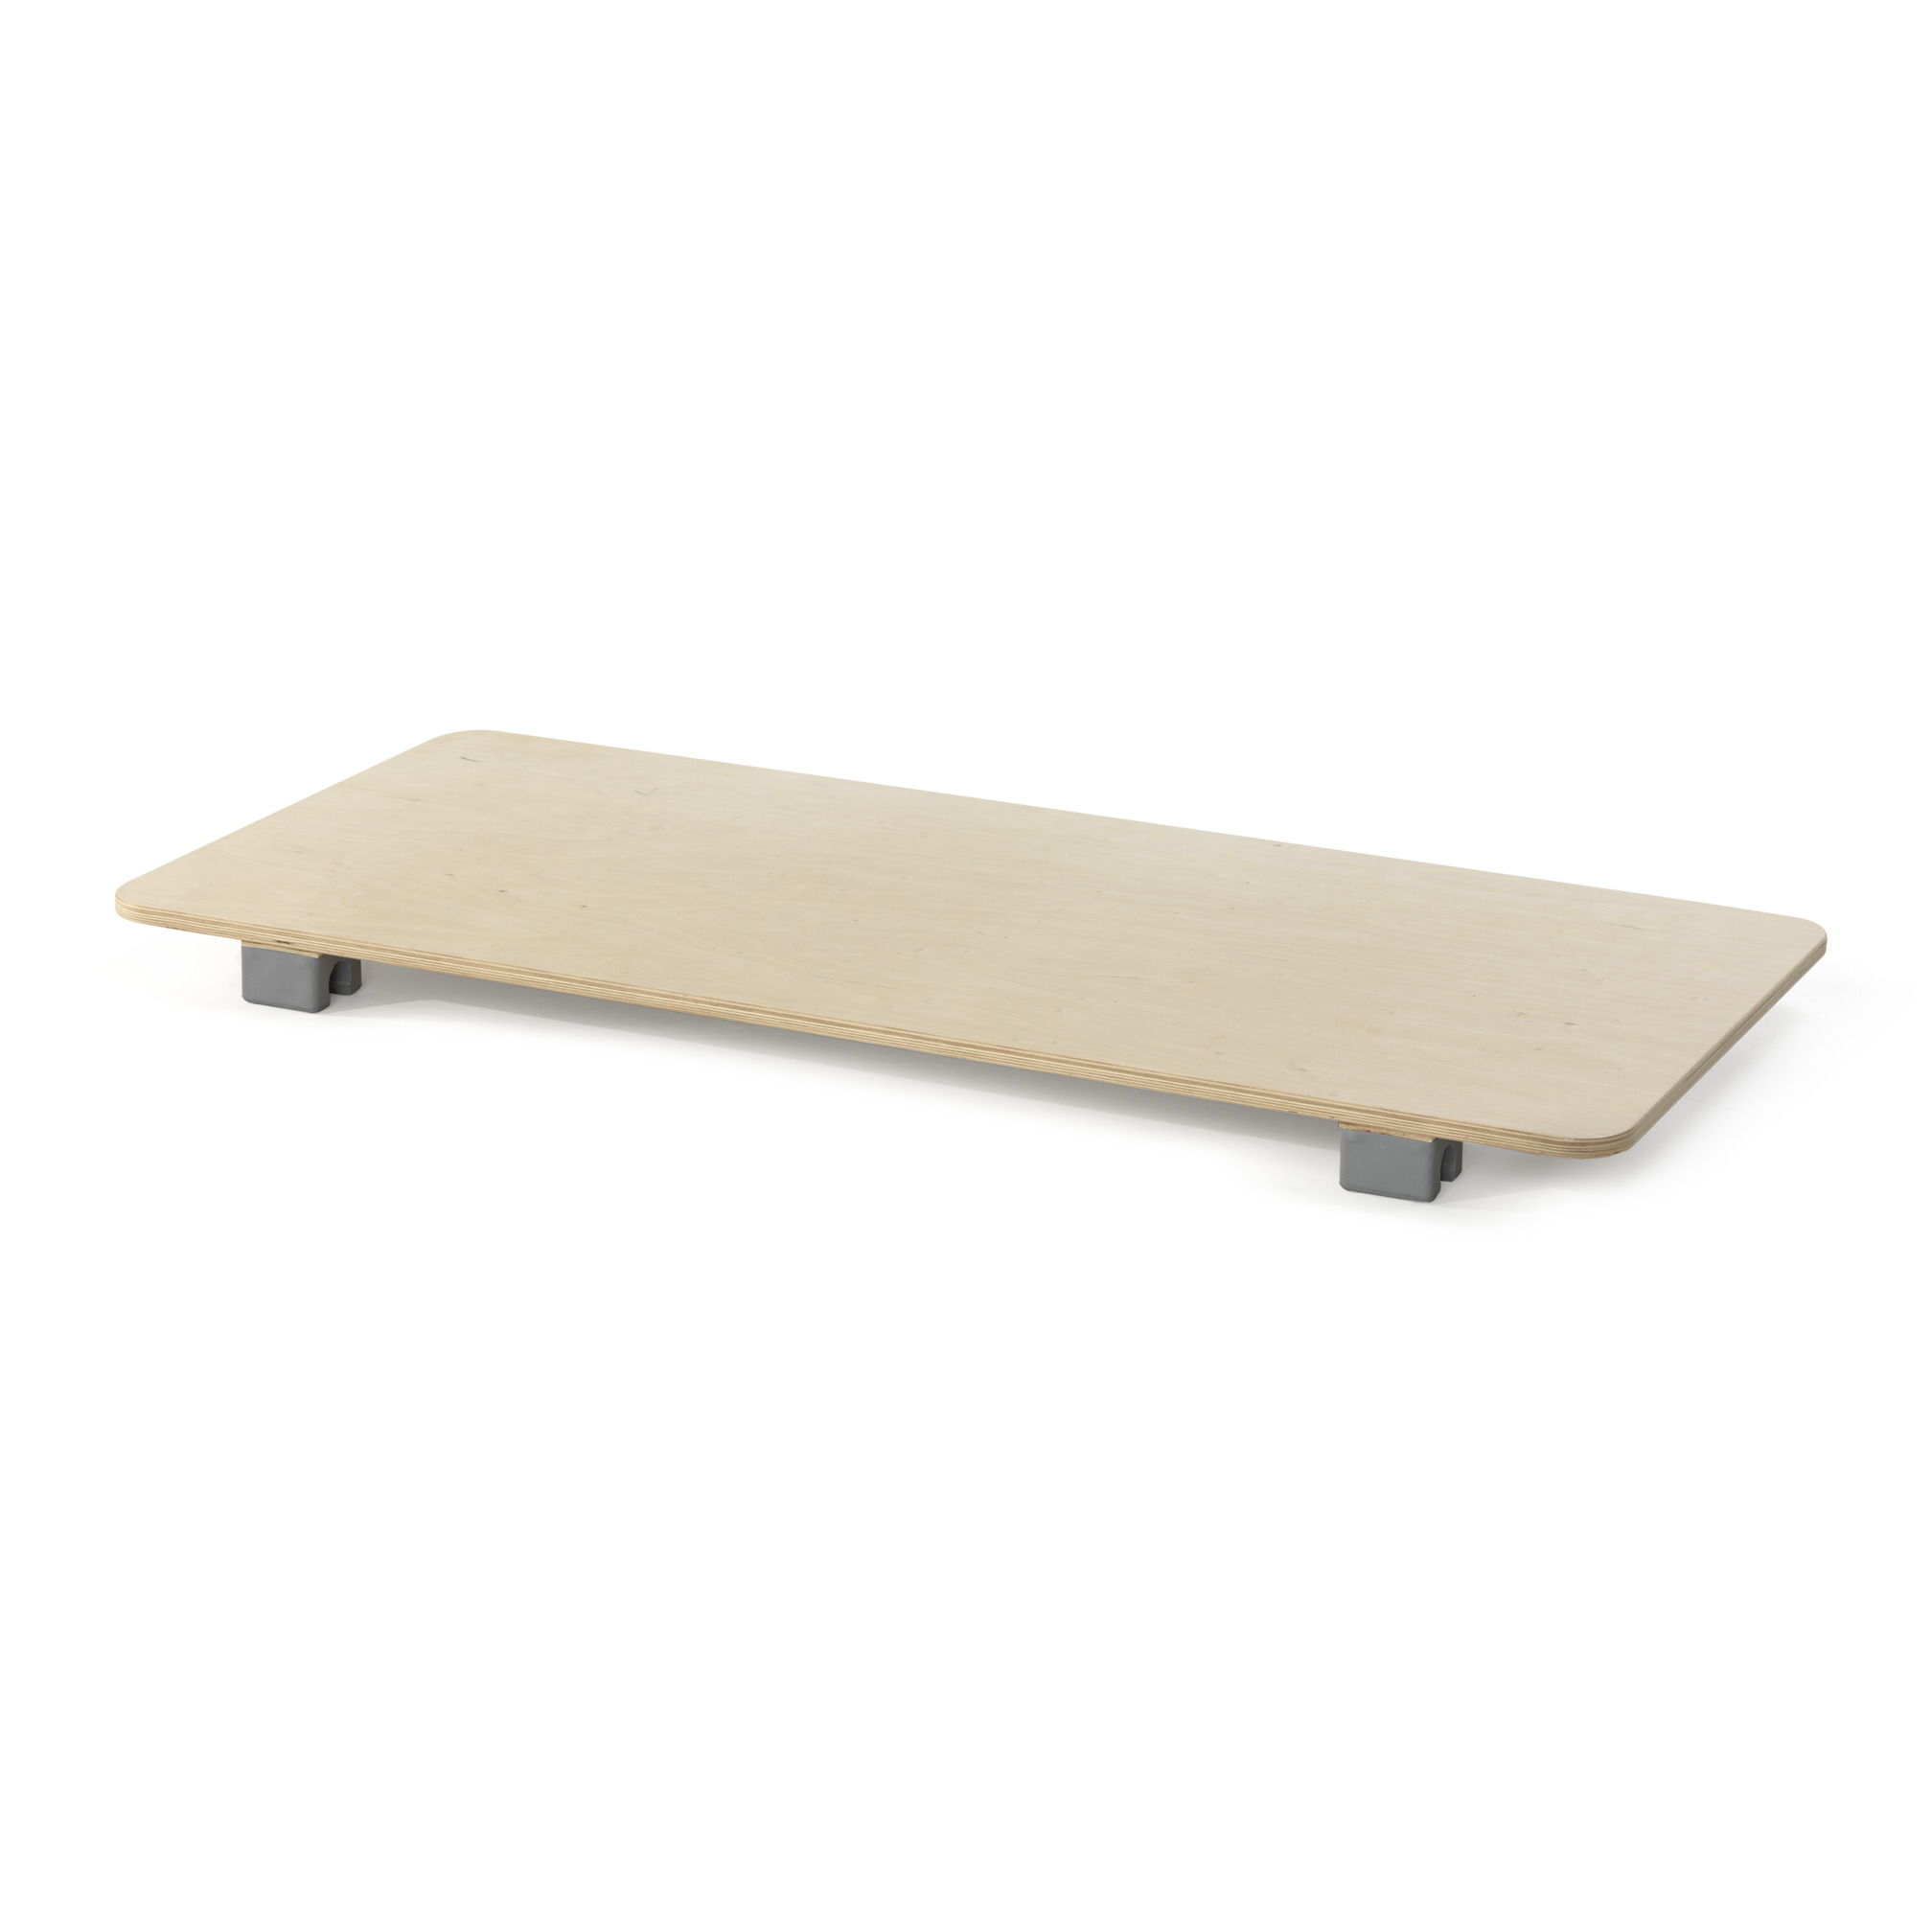 Deck plank combiframe, large